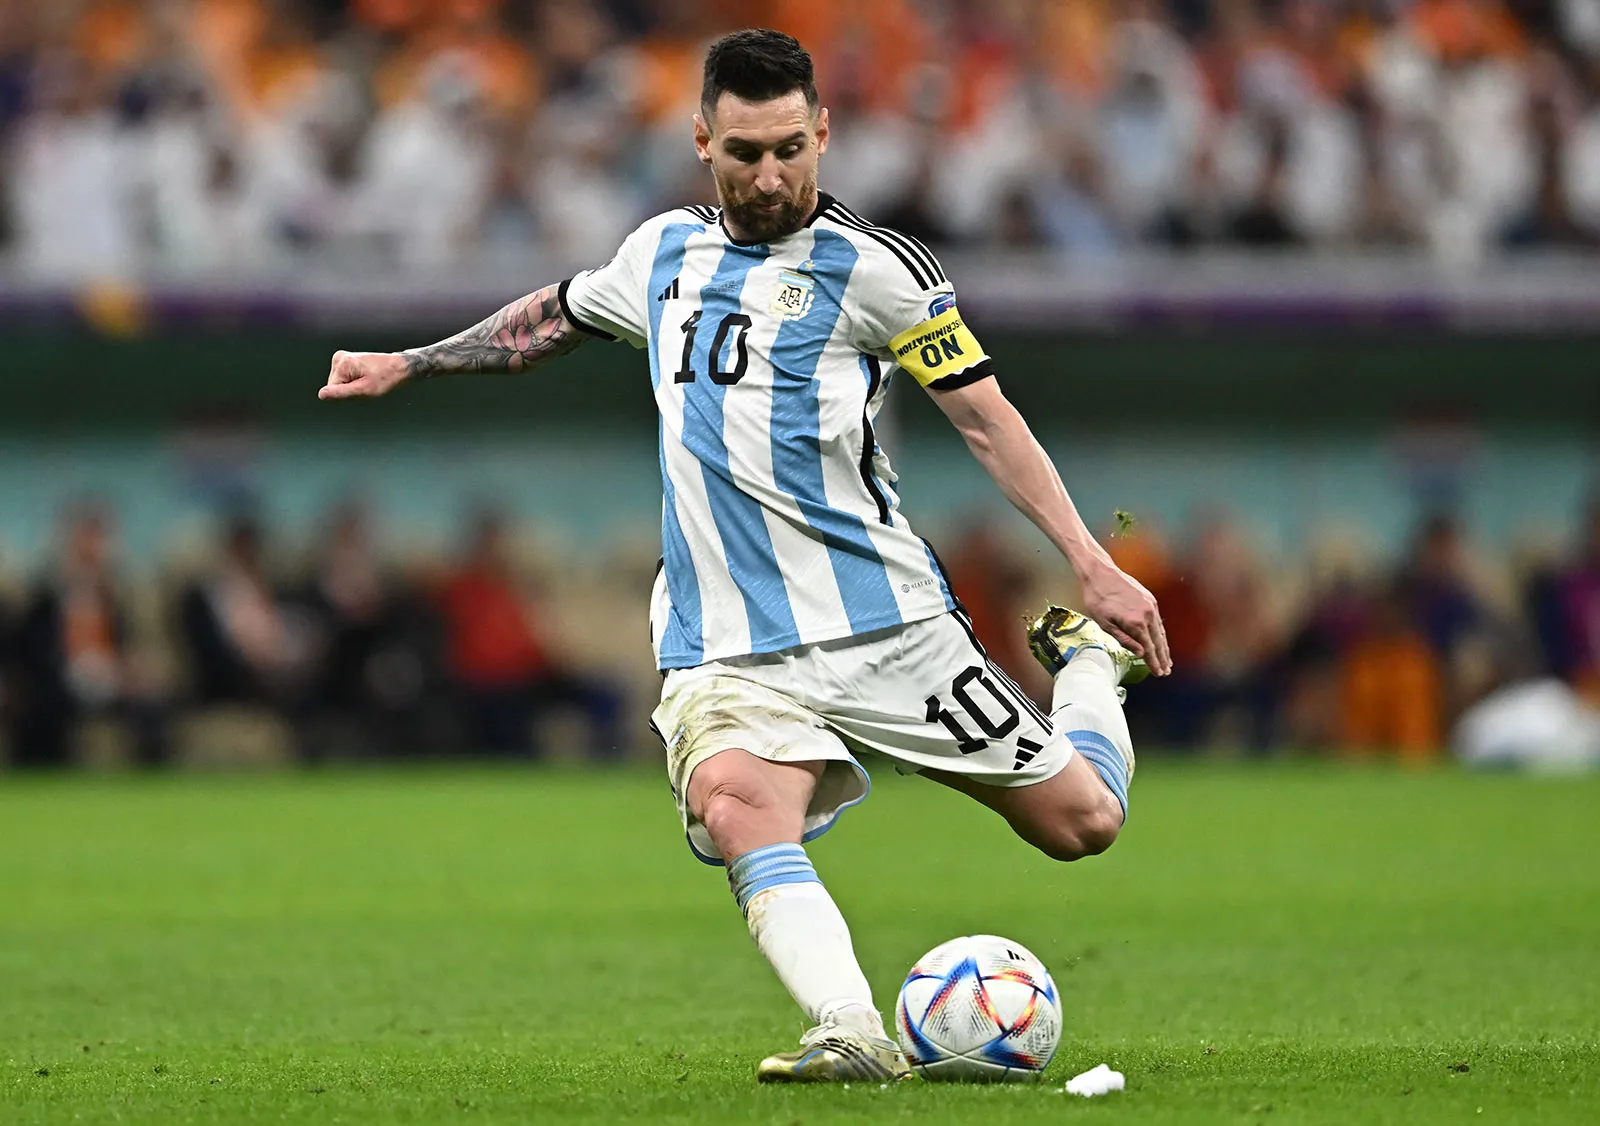 Lionel-Messi-Argentina-Netherlands-World-Cup-Qatar-2022 Timesnews24.in